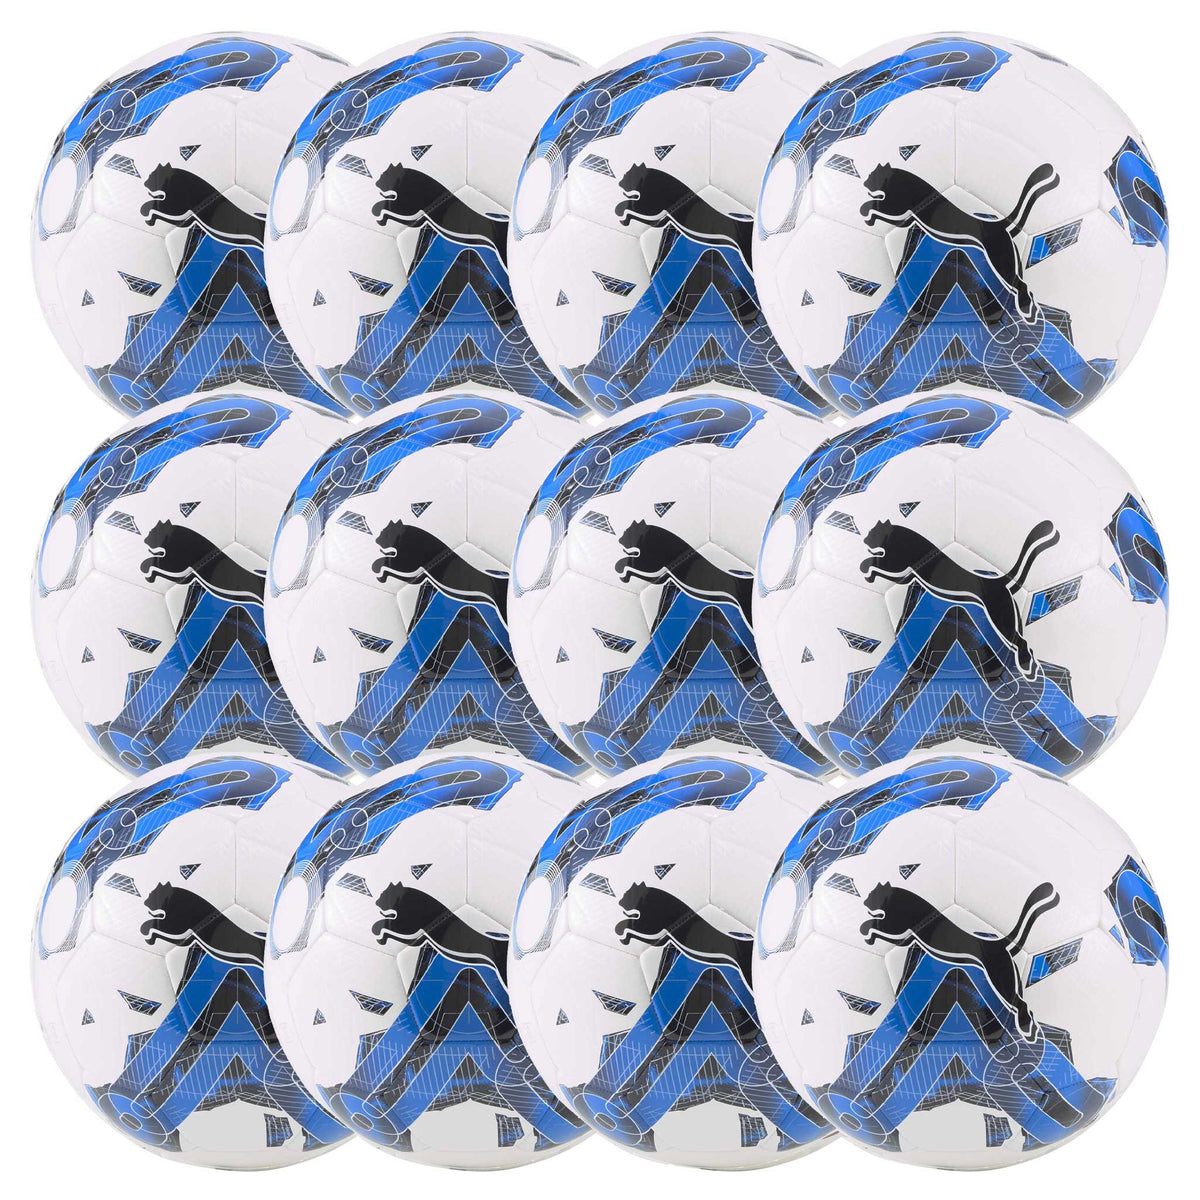 Puma Orbita 6 MS Ensemble de 12 ballons de soccer - Blanc / Bleu